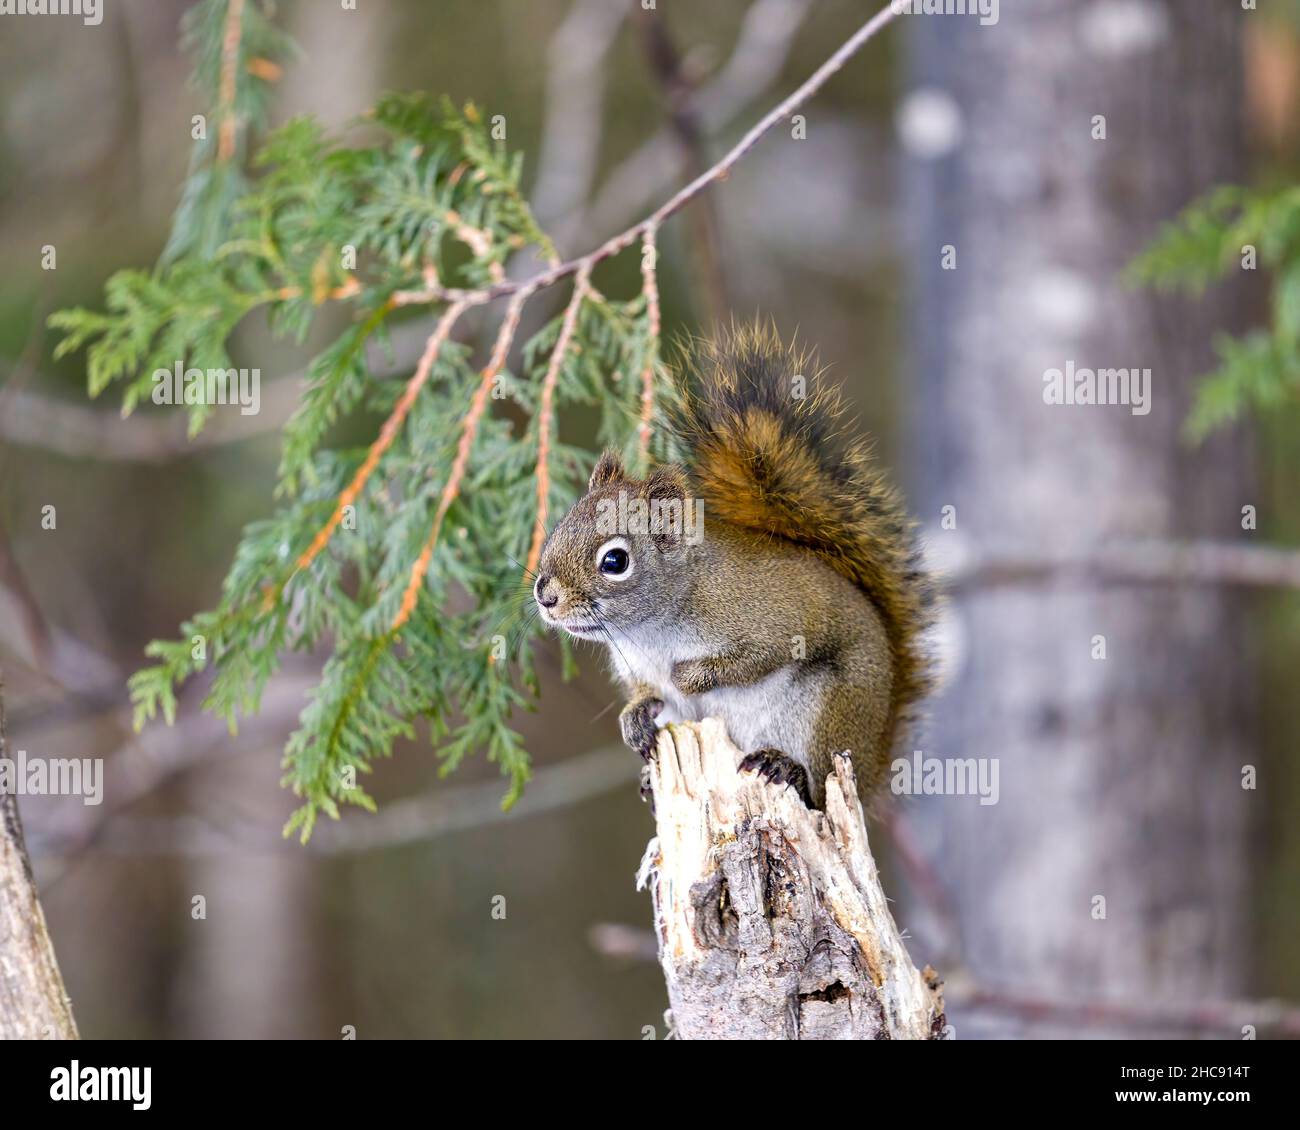 Vue en gros plan de l'écureuil dans la forêt debout sur un arbre de branche avec un arrière-plan flou montrant sa fourrure brune, ses pattes, sa queue broussaillée. Banque D'Images